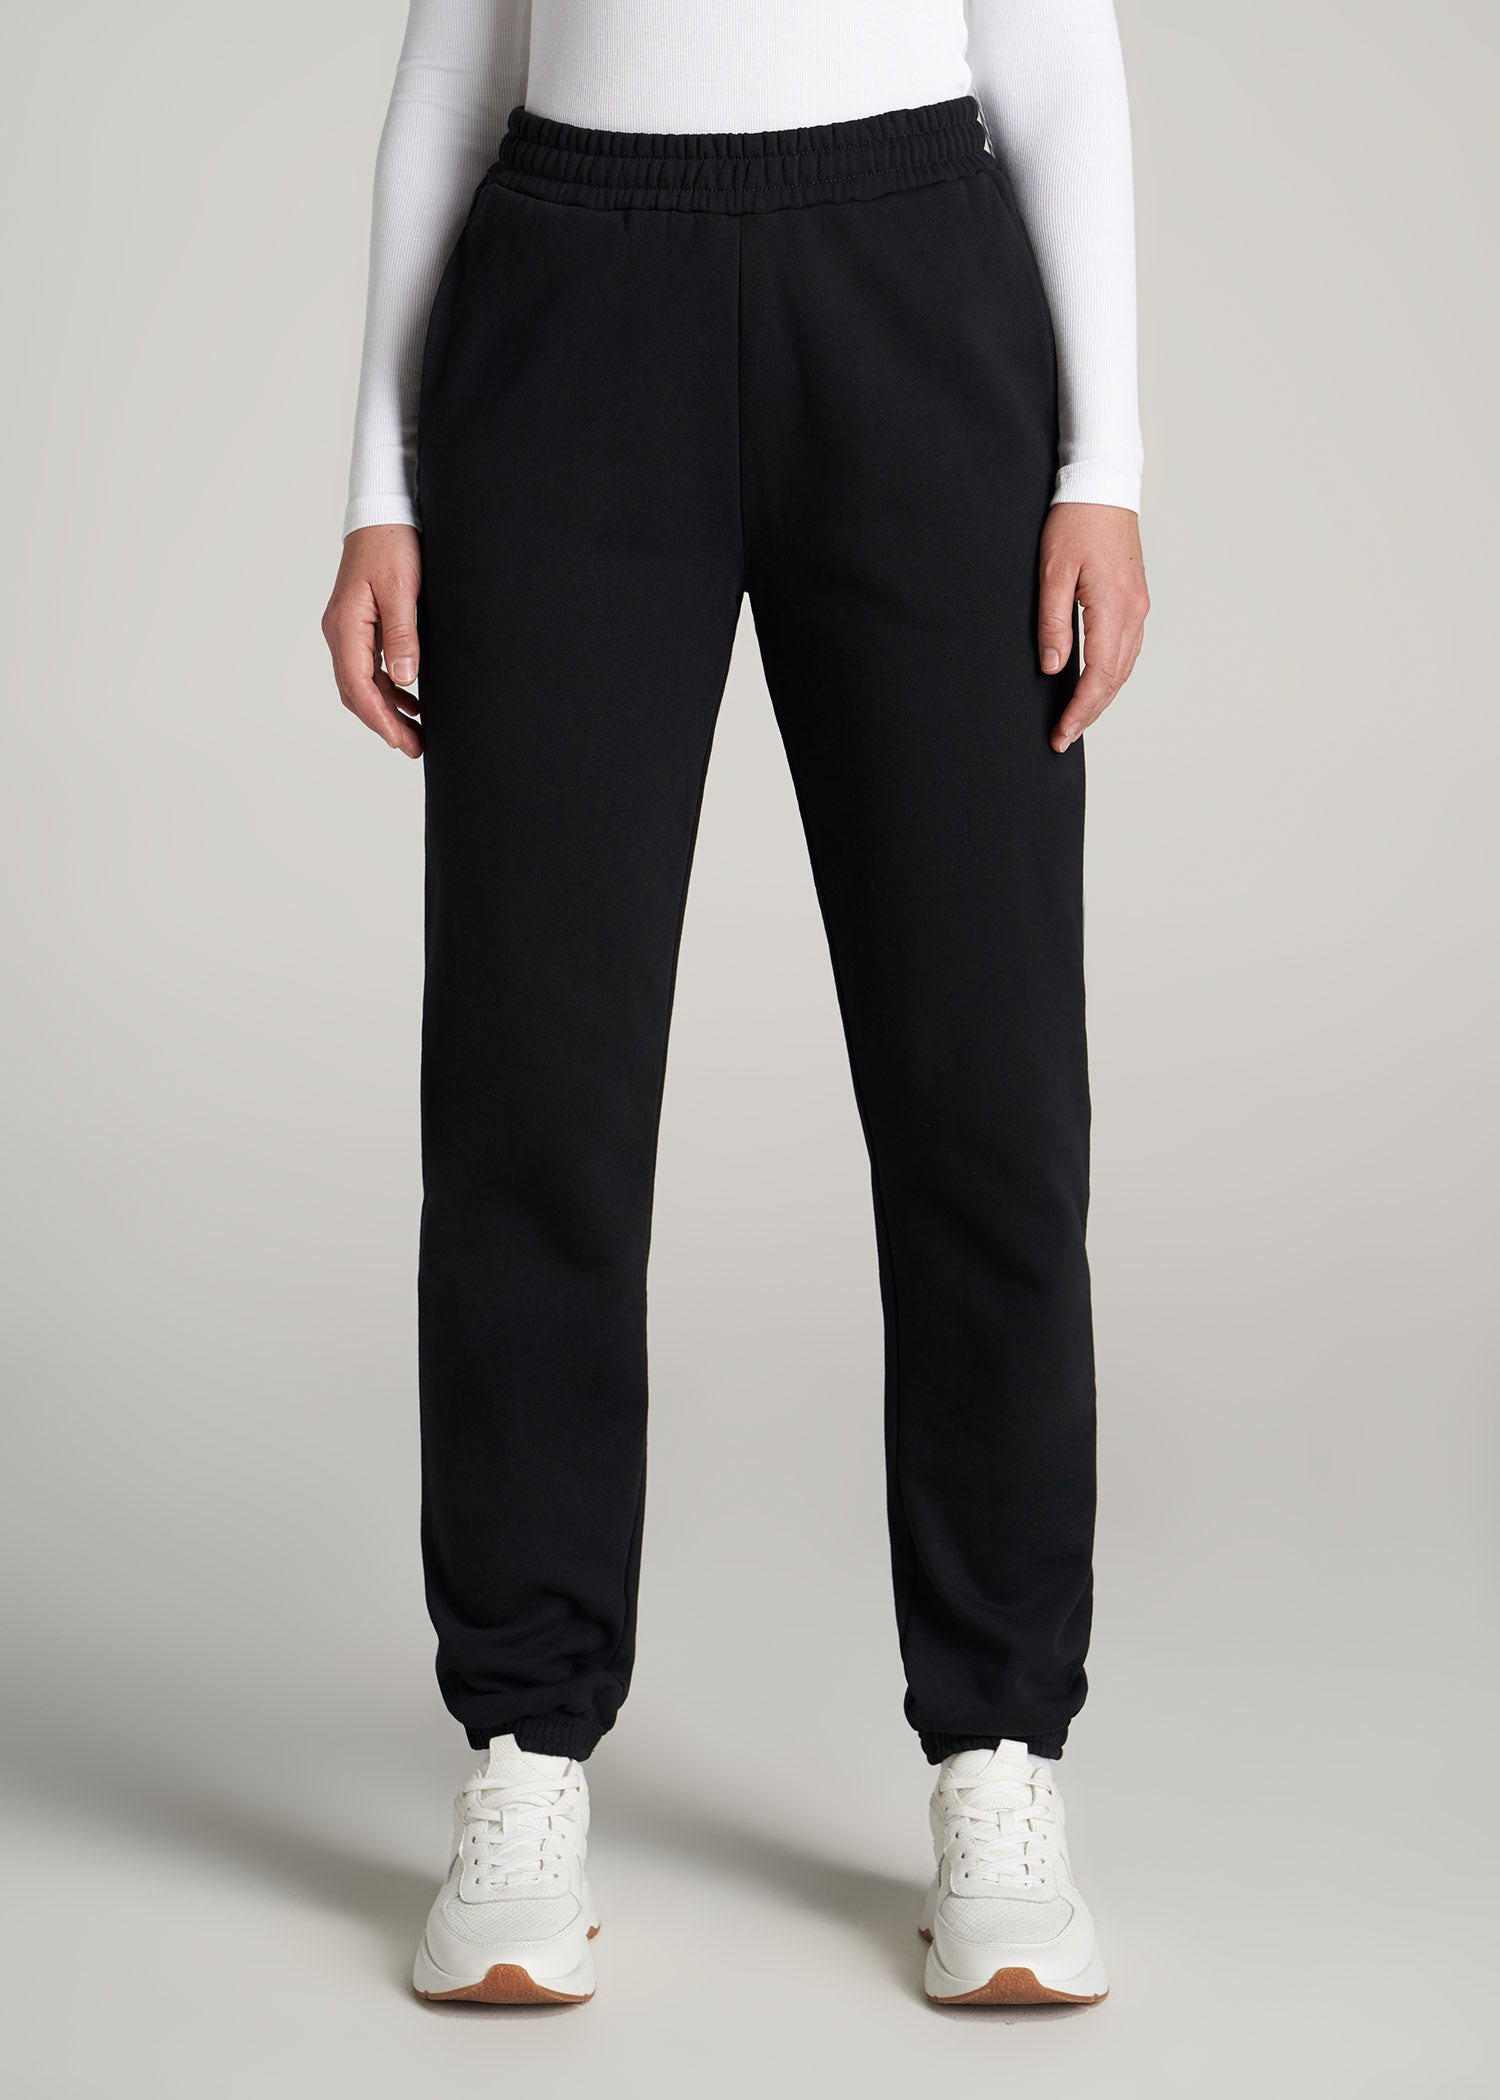 Wearever Fleece Relaxed Women's Tall Sweatpants in Black